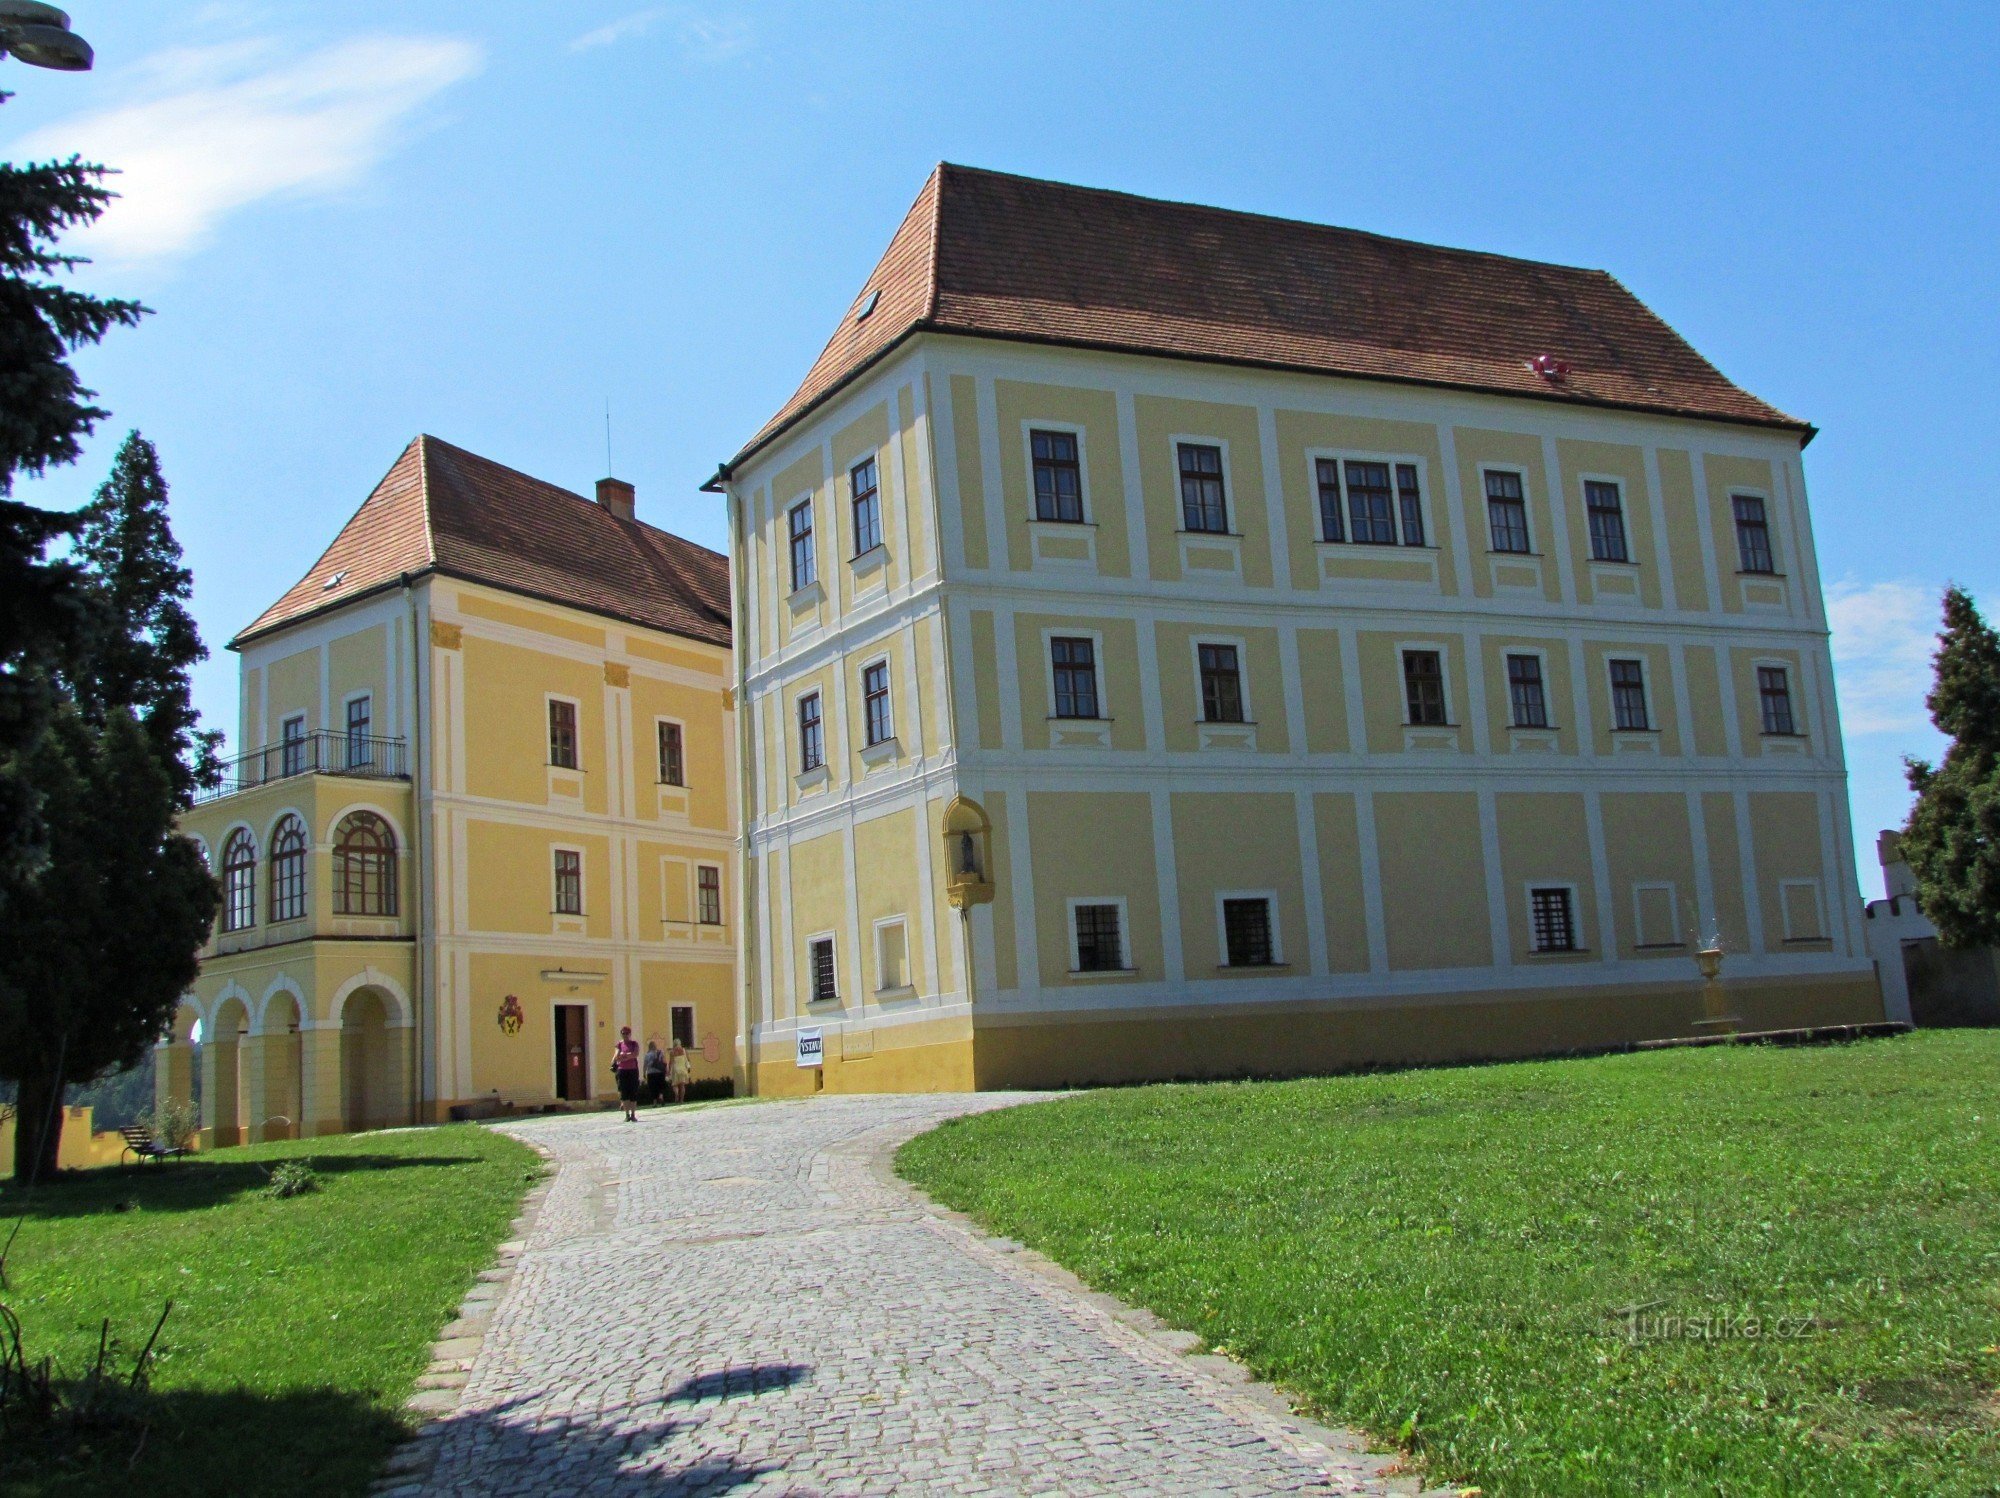 Besøg på slottet i Letovice